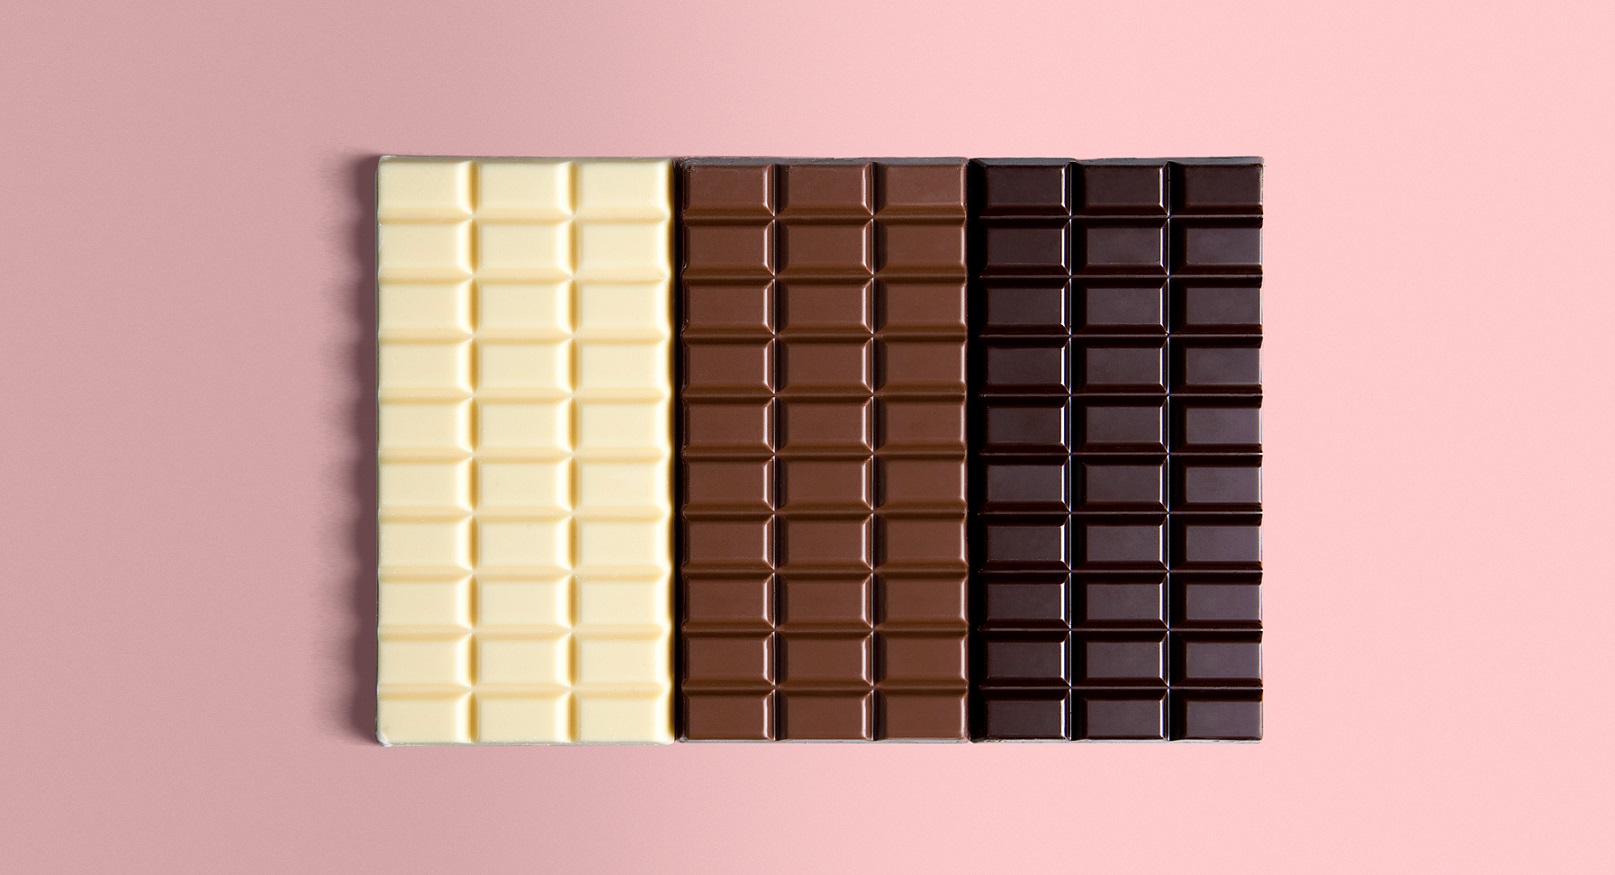 Three types of chocolate bars: White, Milk, Dark